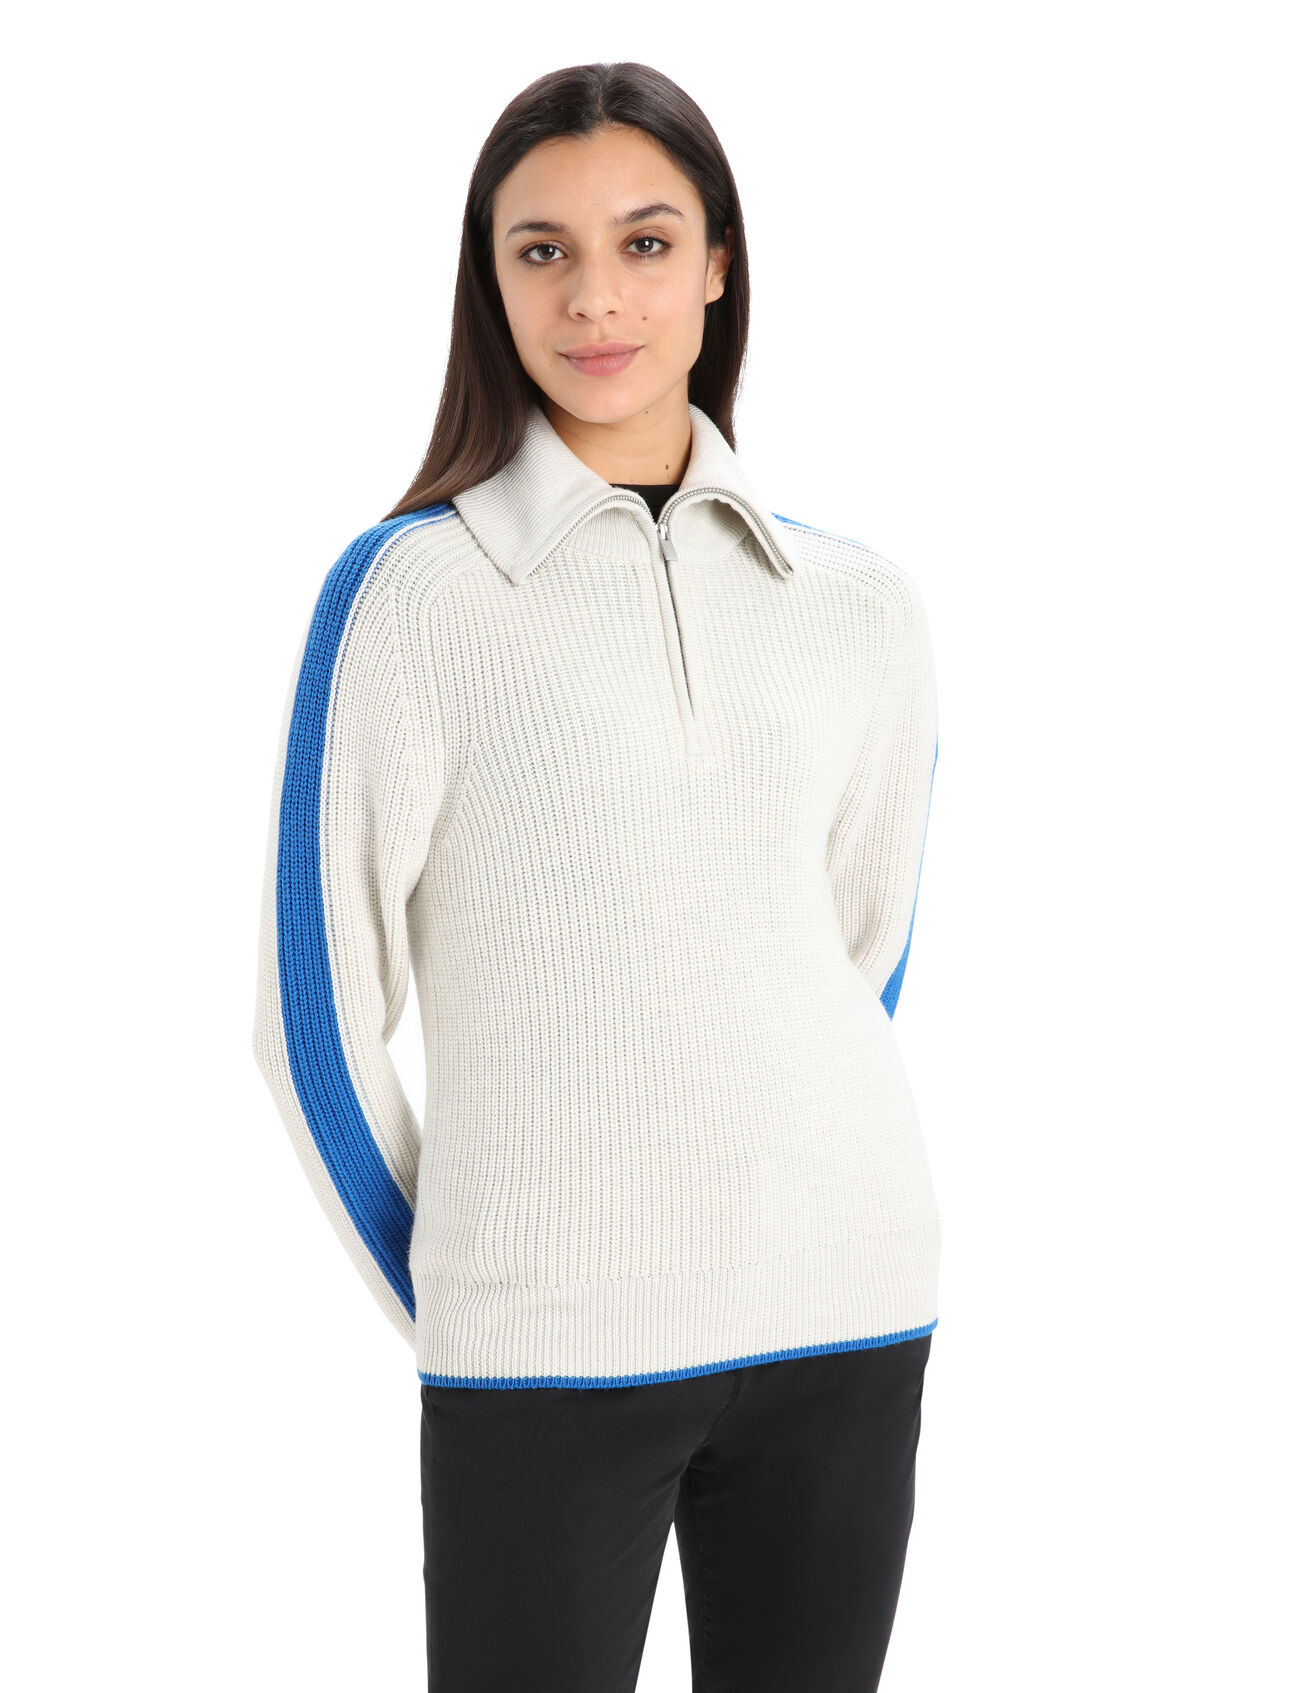 Merino Lodge Half-Zip-Pullover Damen Inspiriert durch unseren ursprünglichen Half-Zip-Merino-Pullover und neu interpretiert mit warmem, grobem Strick und klassischem Skipullover-Stil, der Lodge Half-Zip-Pullover ist der Inbegriff eines warmen Winterpullovers. 